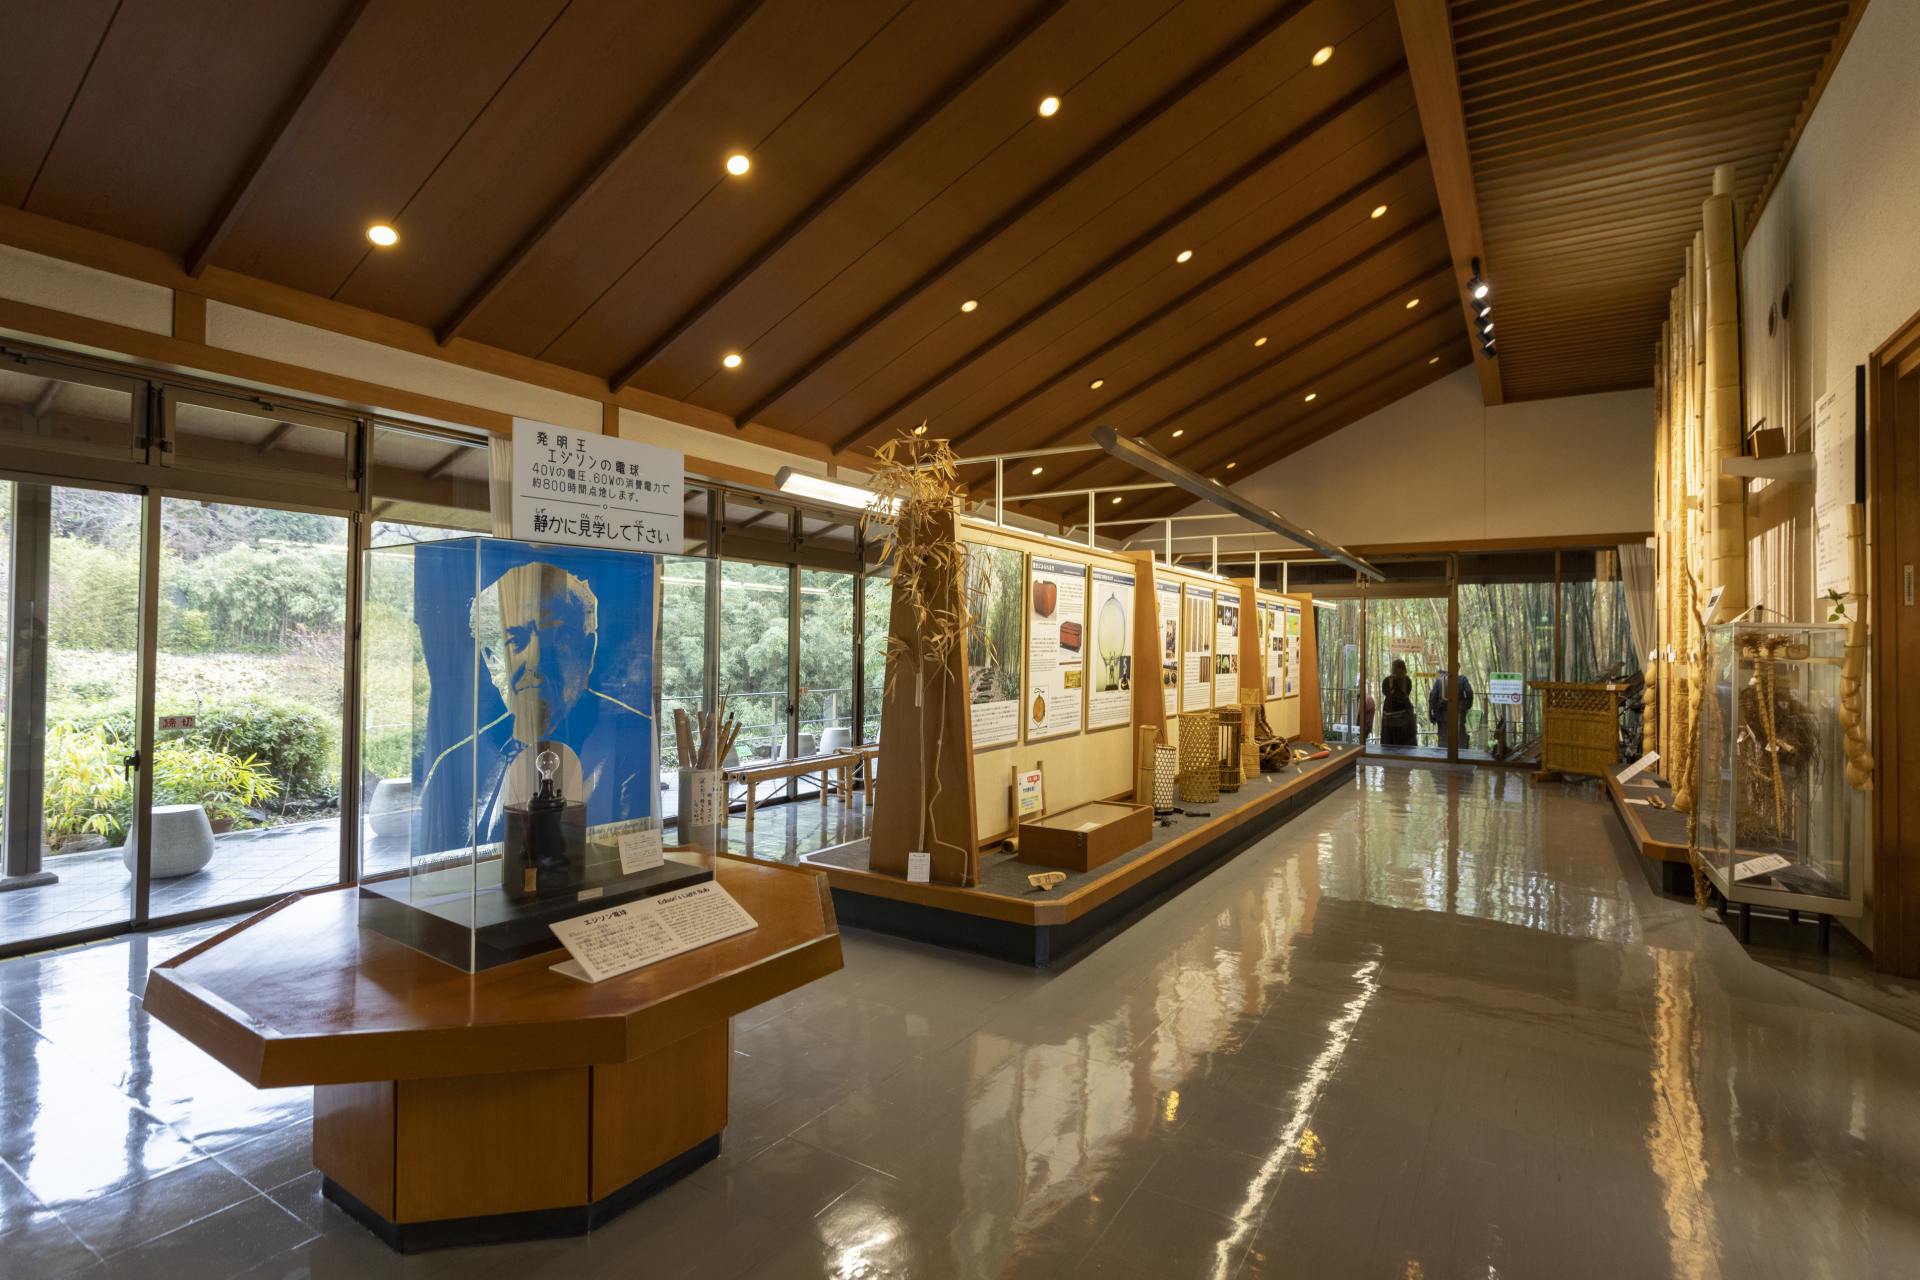 京都市洛西竹林公園のミュージアムは、竹の豊かな歴史と多様性をテーマにしている。